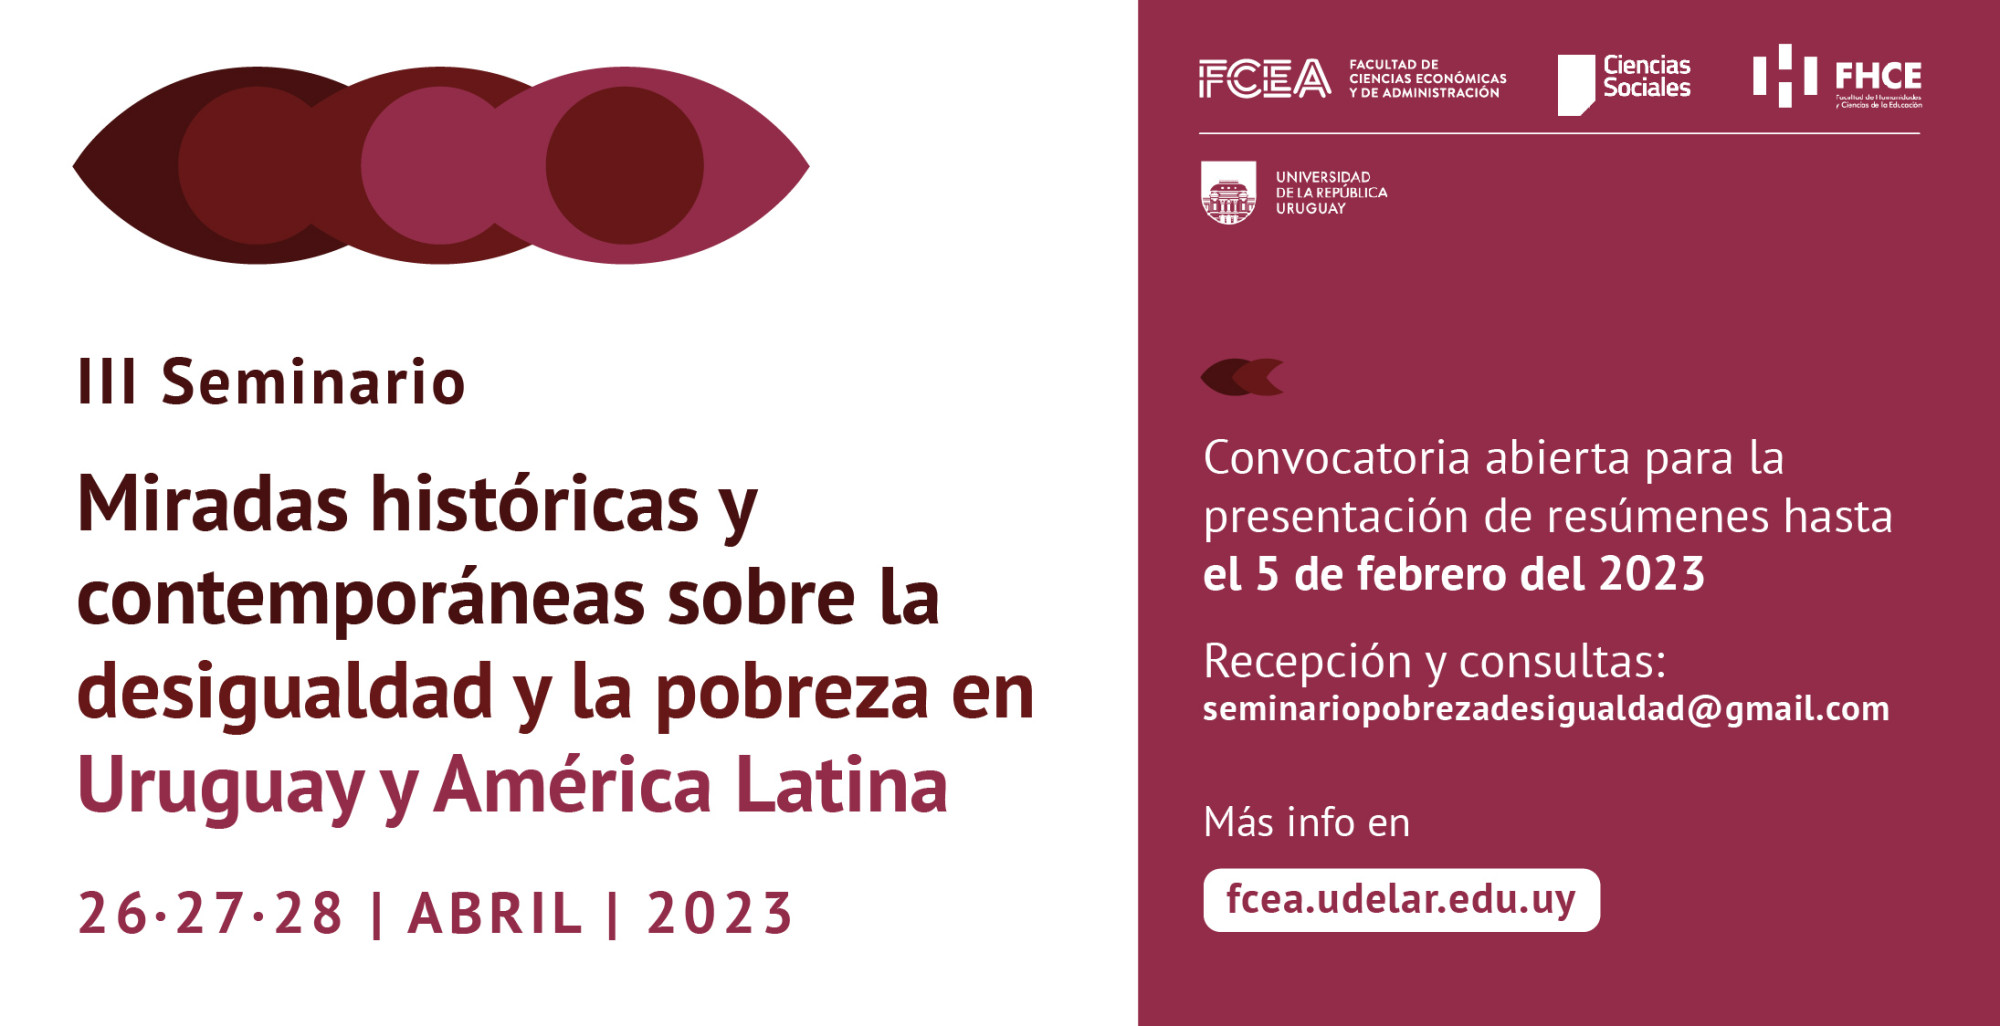 Se convoca a presentar resúmenes para el III Seminario Miradas históricas y contemporáneas sobre la desigualdad y la pobreza en Uruguay y América Latina